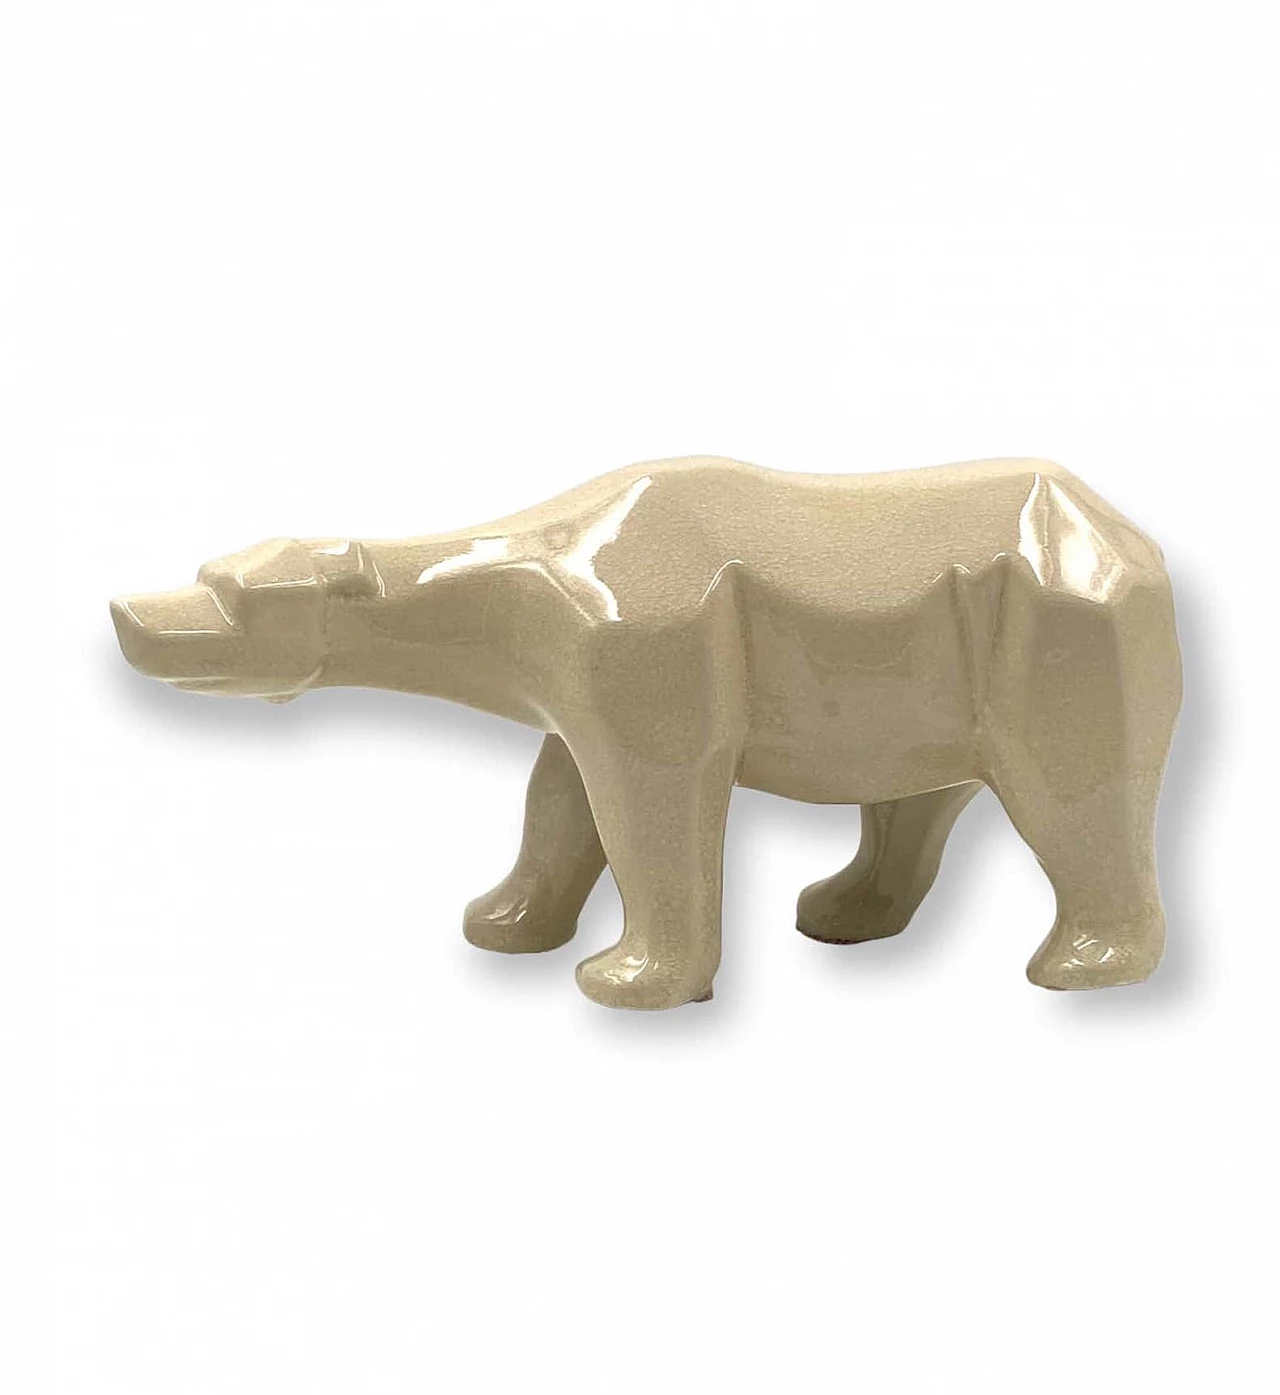 Craquelé ceramic polar bear by L&V Ceram, 1970s 20